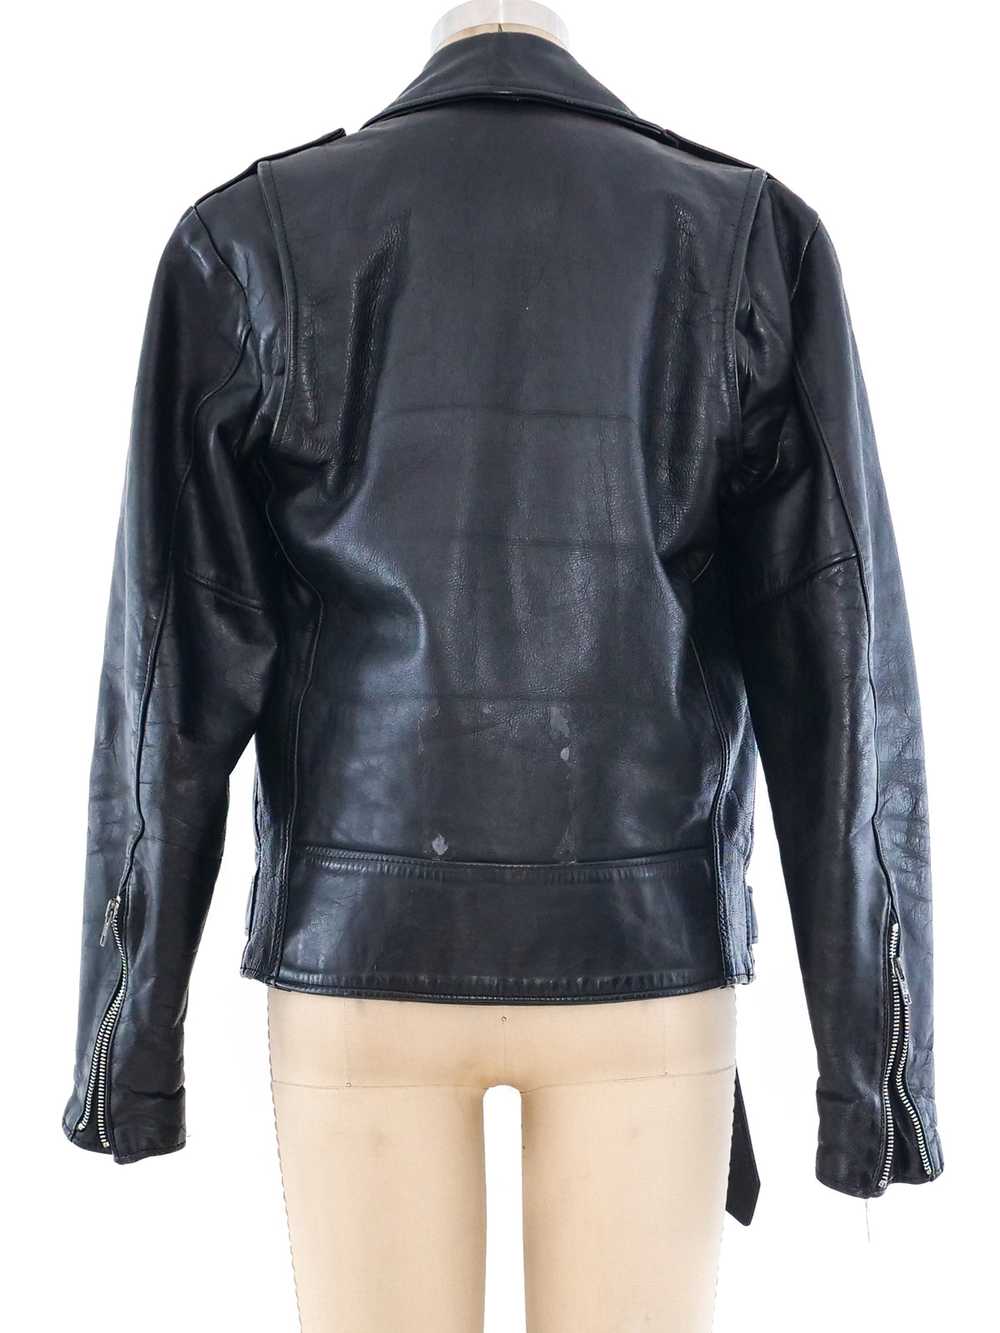 Leather Motorcycle Jacket - image 2